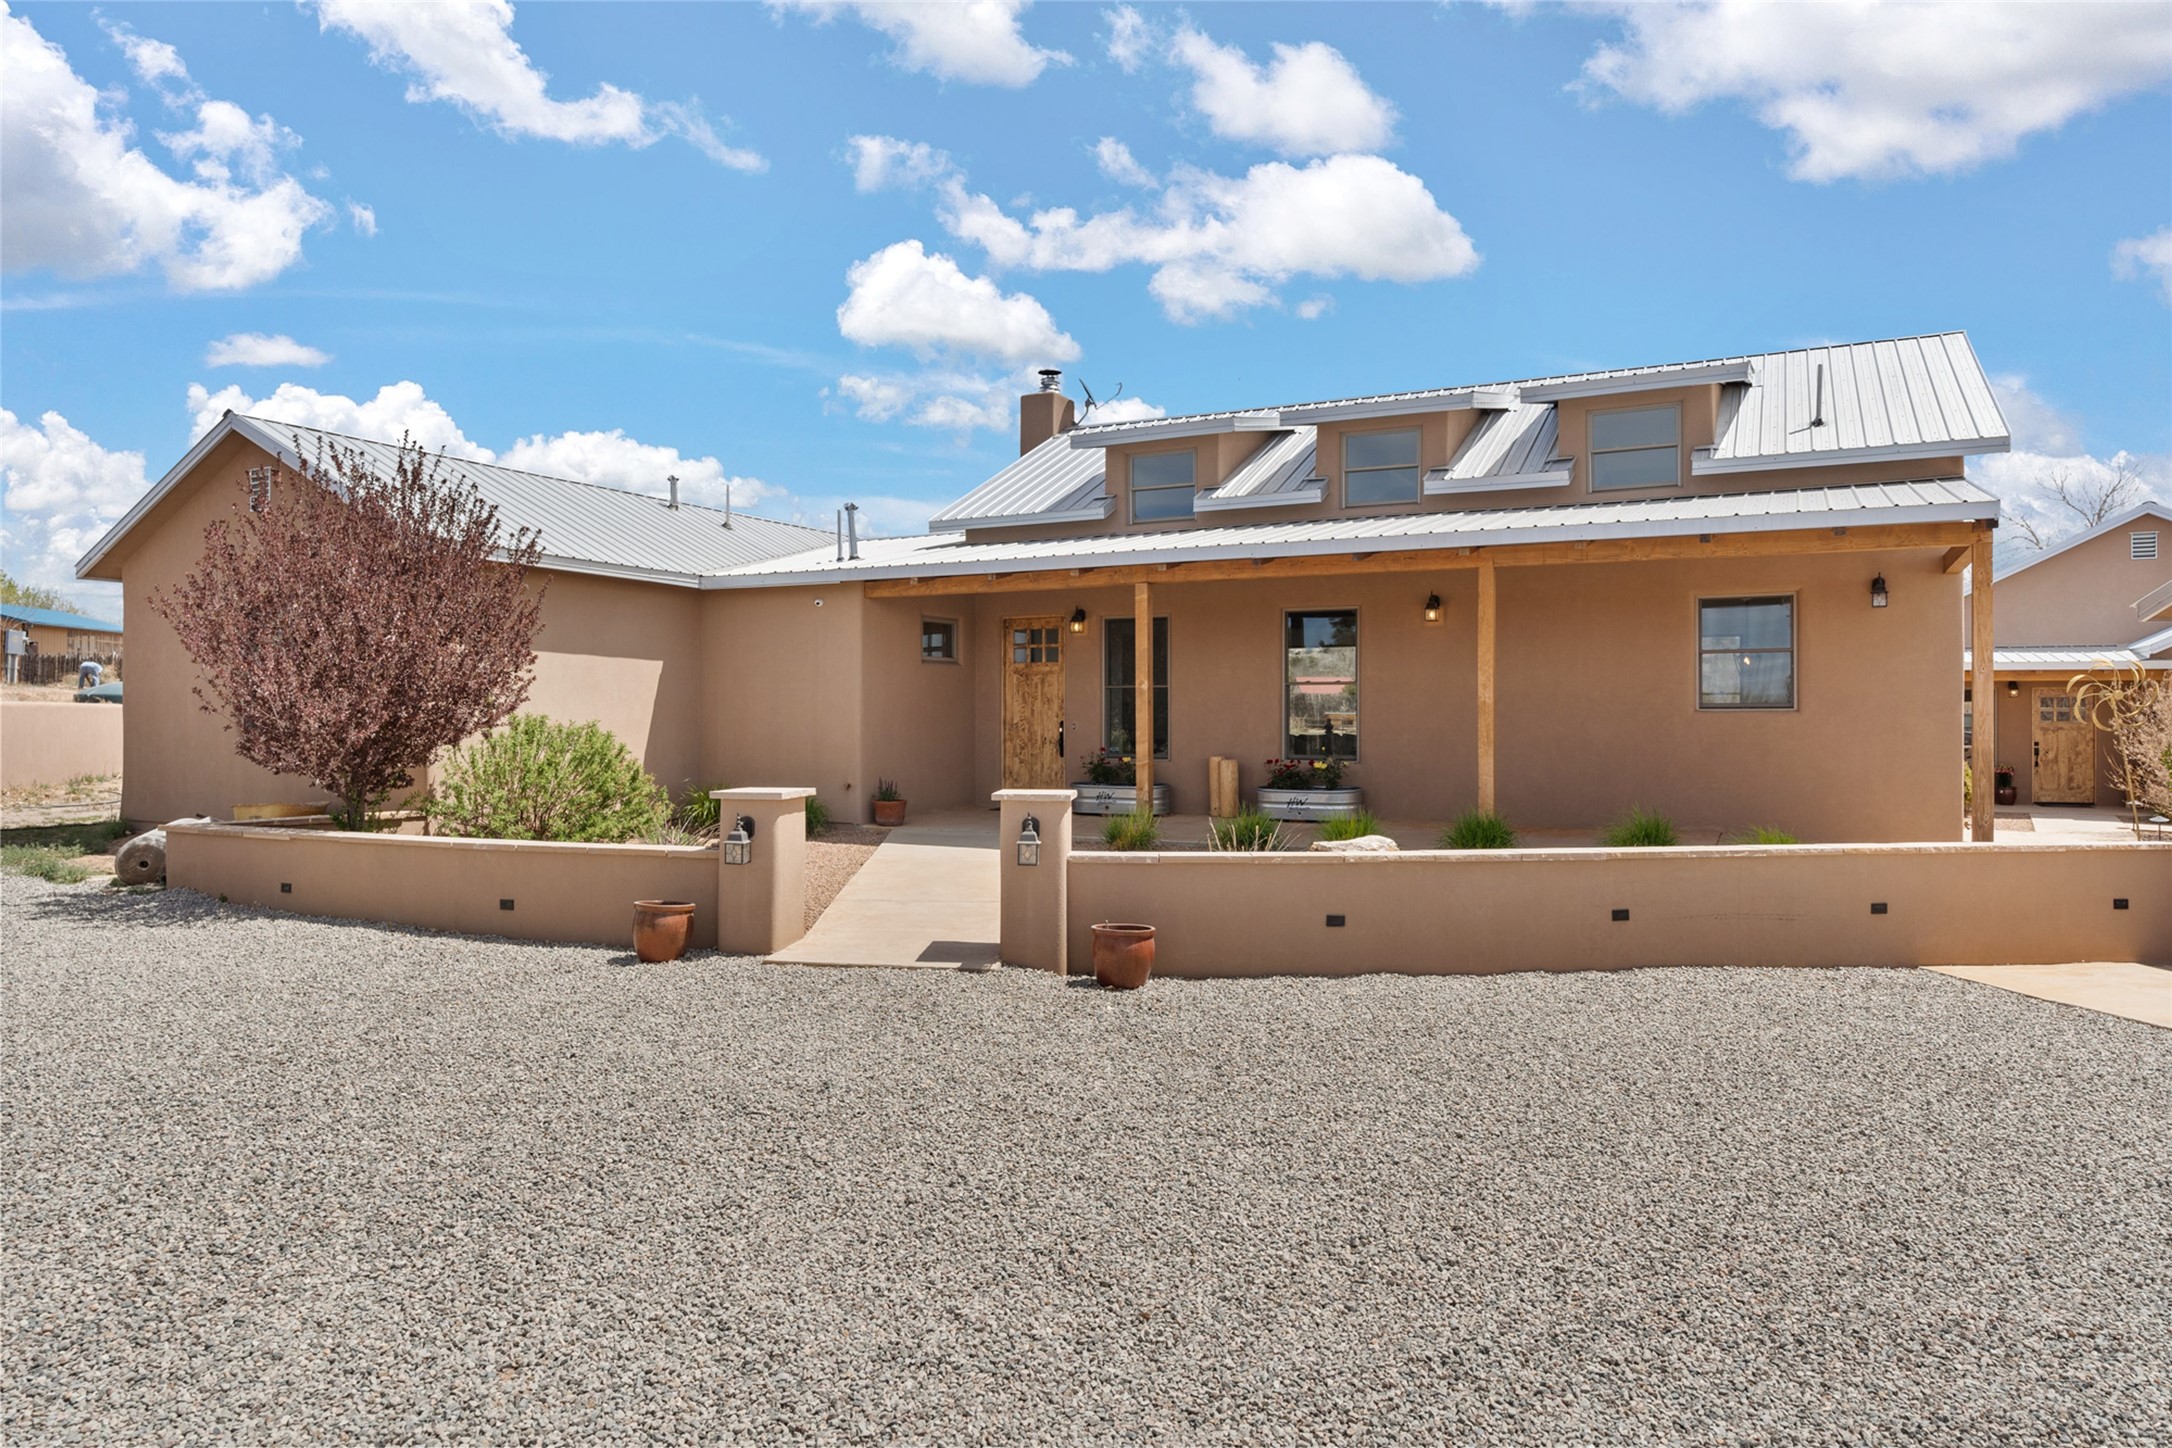 4A Arroyo Negro, Santa Fe, New Mexico 87506, 3 Bedrooms Bedrooms, ,4 BathroomsBathrooms,Residential,For Sale,4A Arroyo Negro,202401323